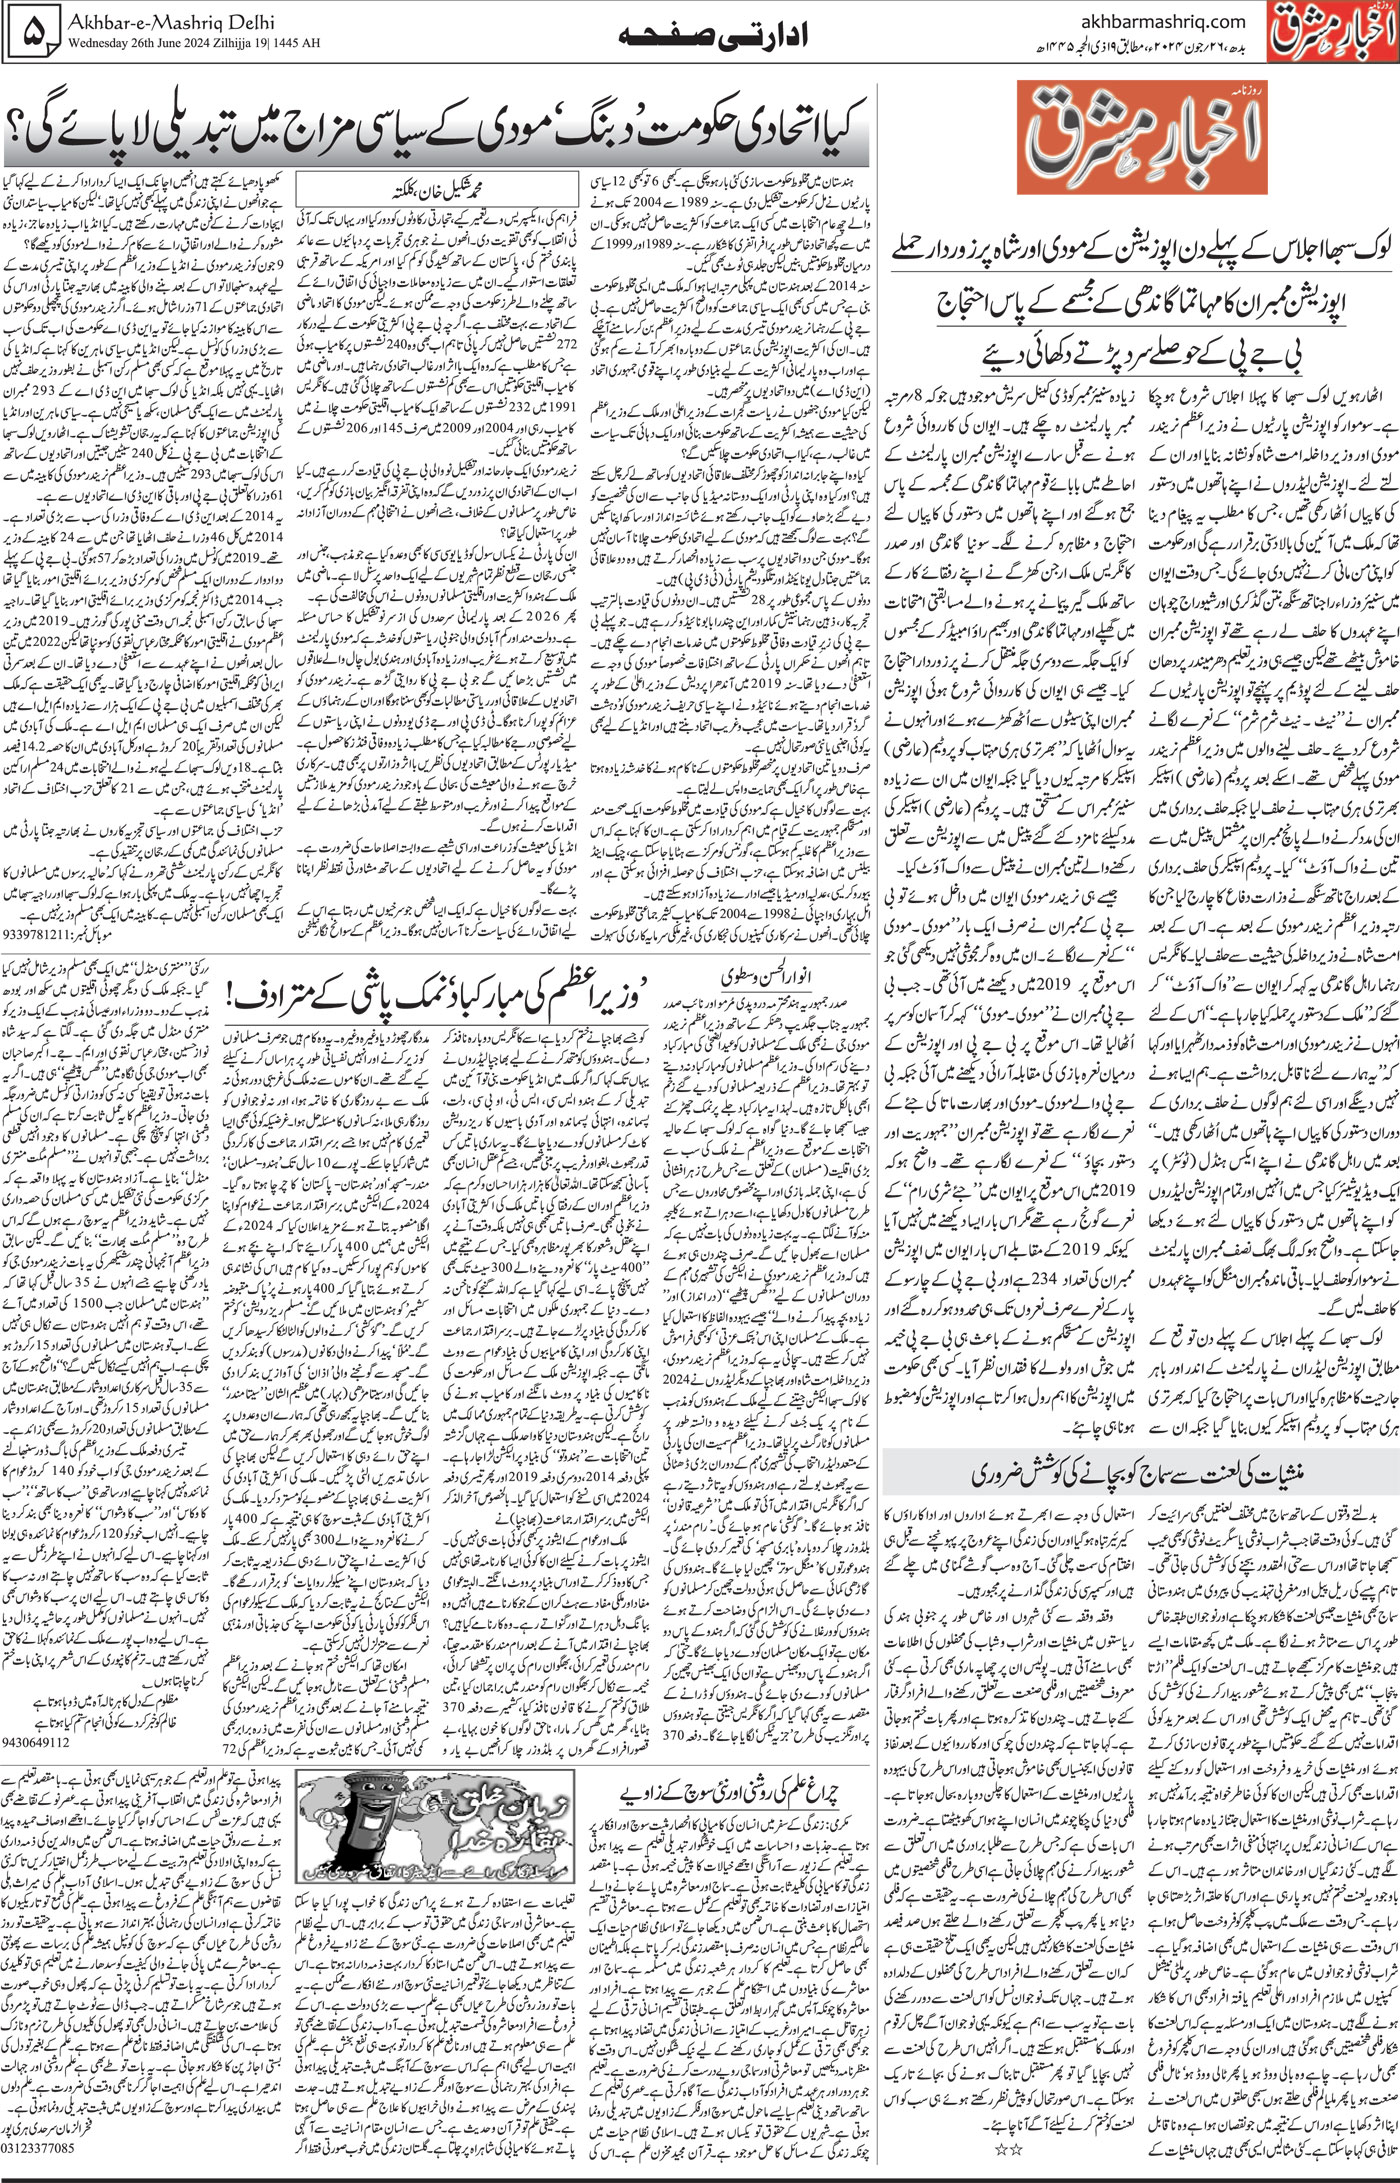 Akhbar E Mashriq Delhi | Urdu Daily | Urdu News | Indian Urdu Media ...